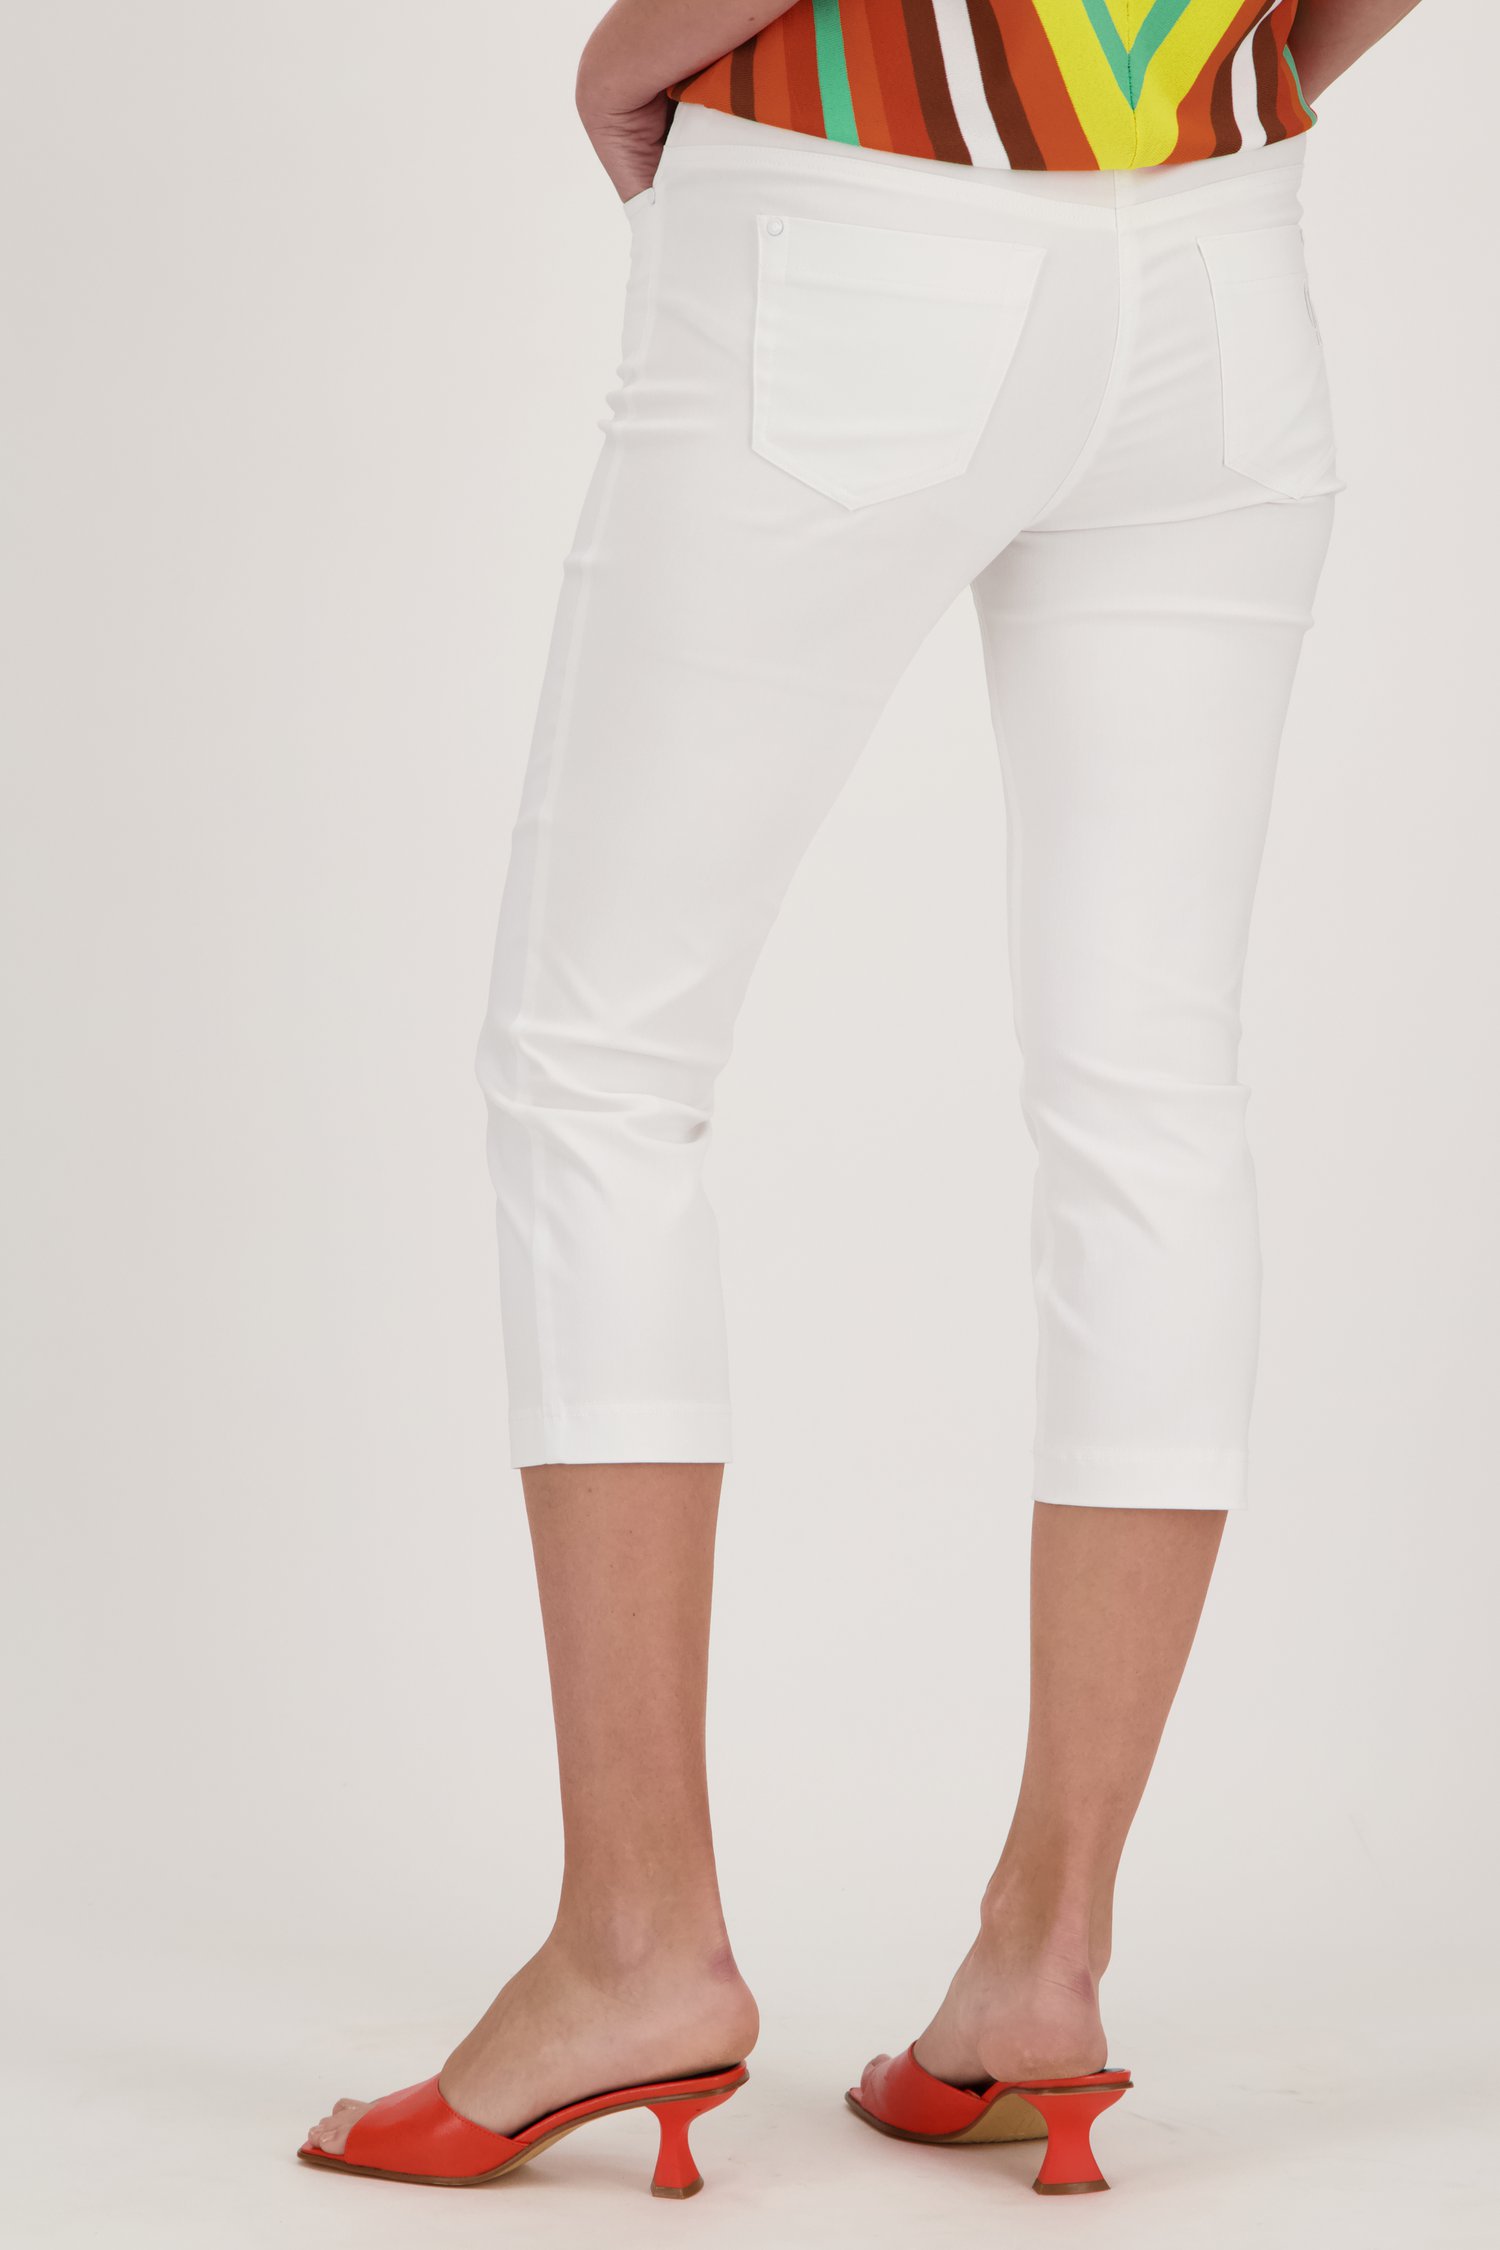 Pantalon stretch blanc - longueur 3/4 de Claude Arielle pour Femmes